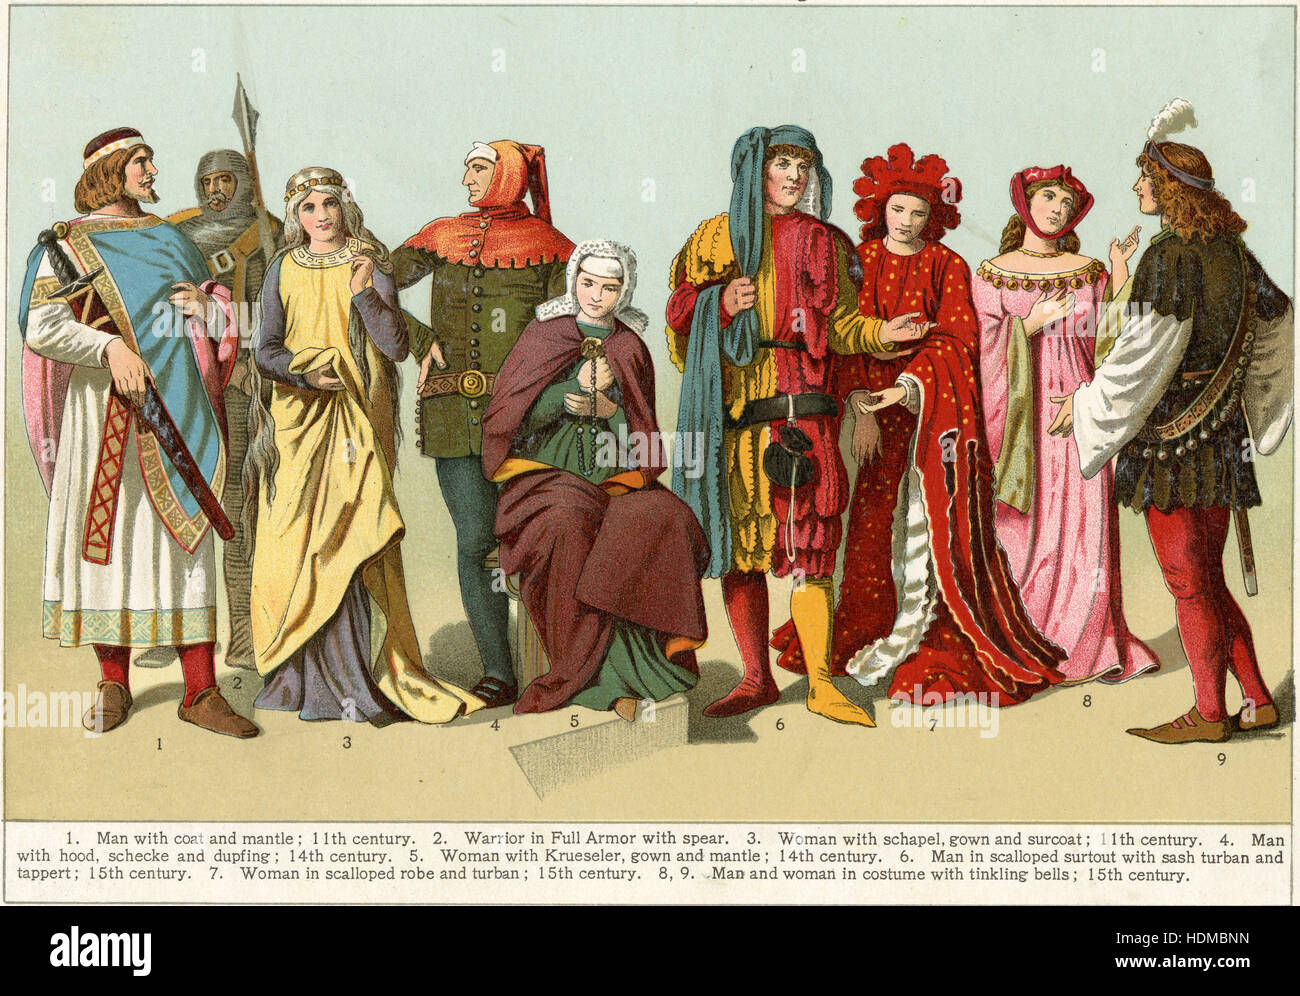 1897 chromolithgraph antique montrant les costumes du Moyen Age - Homme avec manteau et du manteau (11e siècle) ; Guerrier en armure complète avec lance ; Femme avec schapel, robe et surcoat (11e siècle) ; l'homme avec capuche, schecke et dupfing (14e siècle) ; Femme avec Krueseler, robe et manteau (14e siècle) ; l'homme en robe, surtout avec écharpe turban et tappert (15e siècle) ; la femme en robe robe et turban (15e siècle) ; l'homme et la femme avec cloches tintant (15e siècle). SOURCE : CHROMOLITHOGRAPHIE ORIGINALE. Banque D'Images